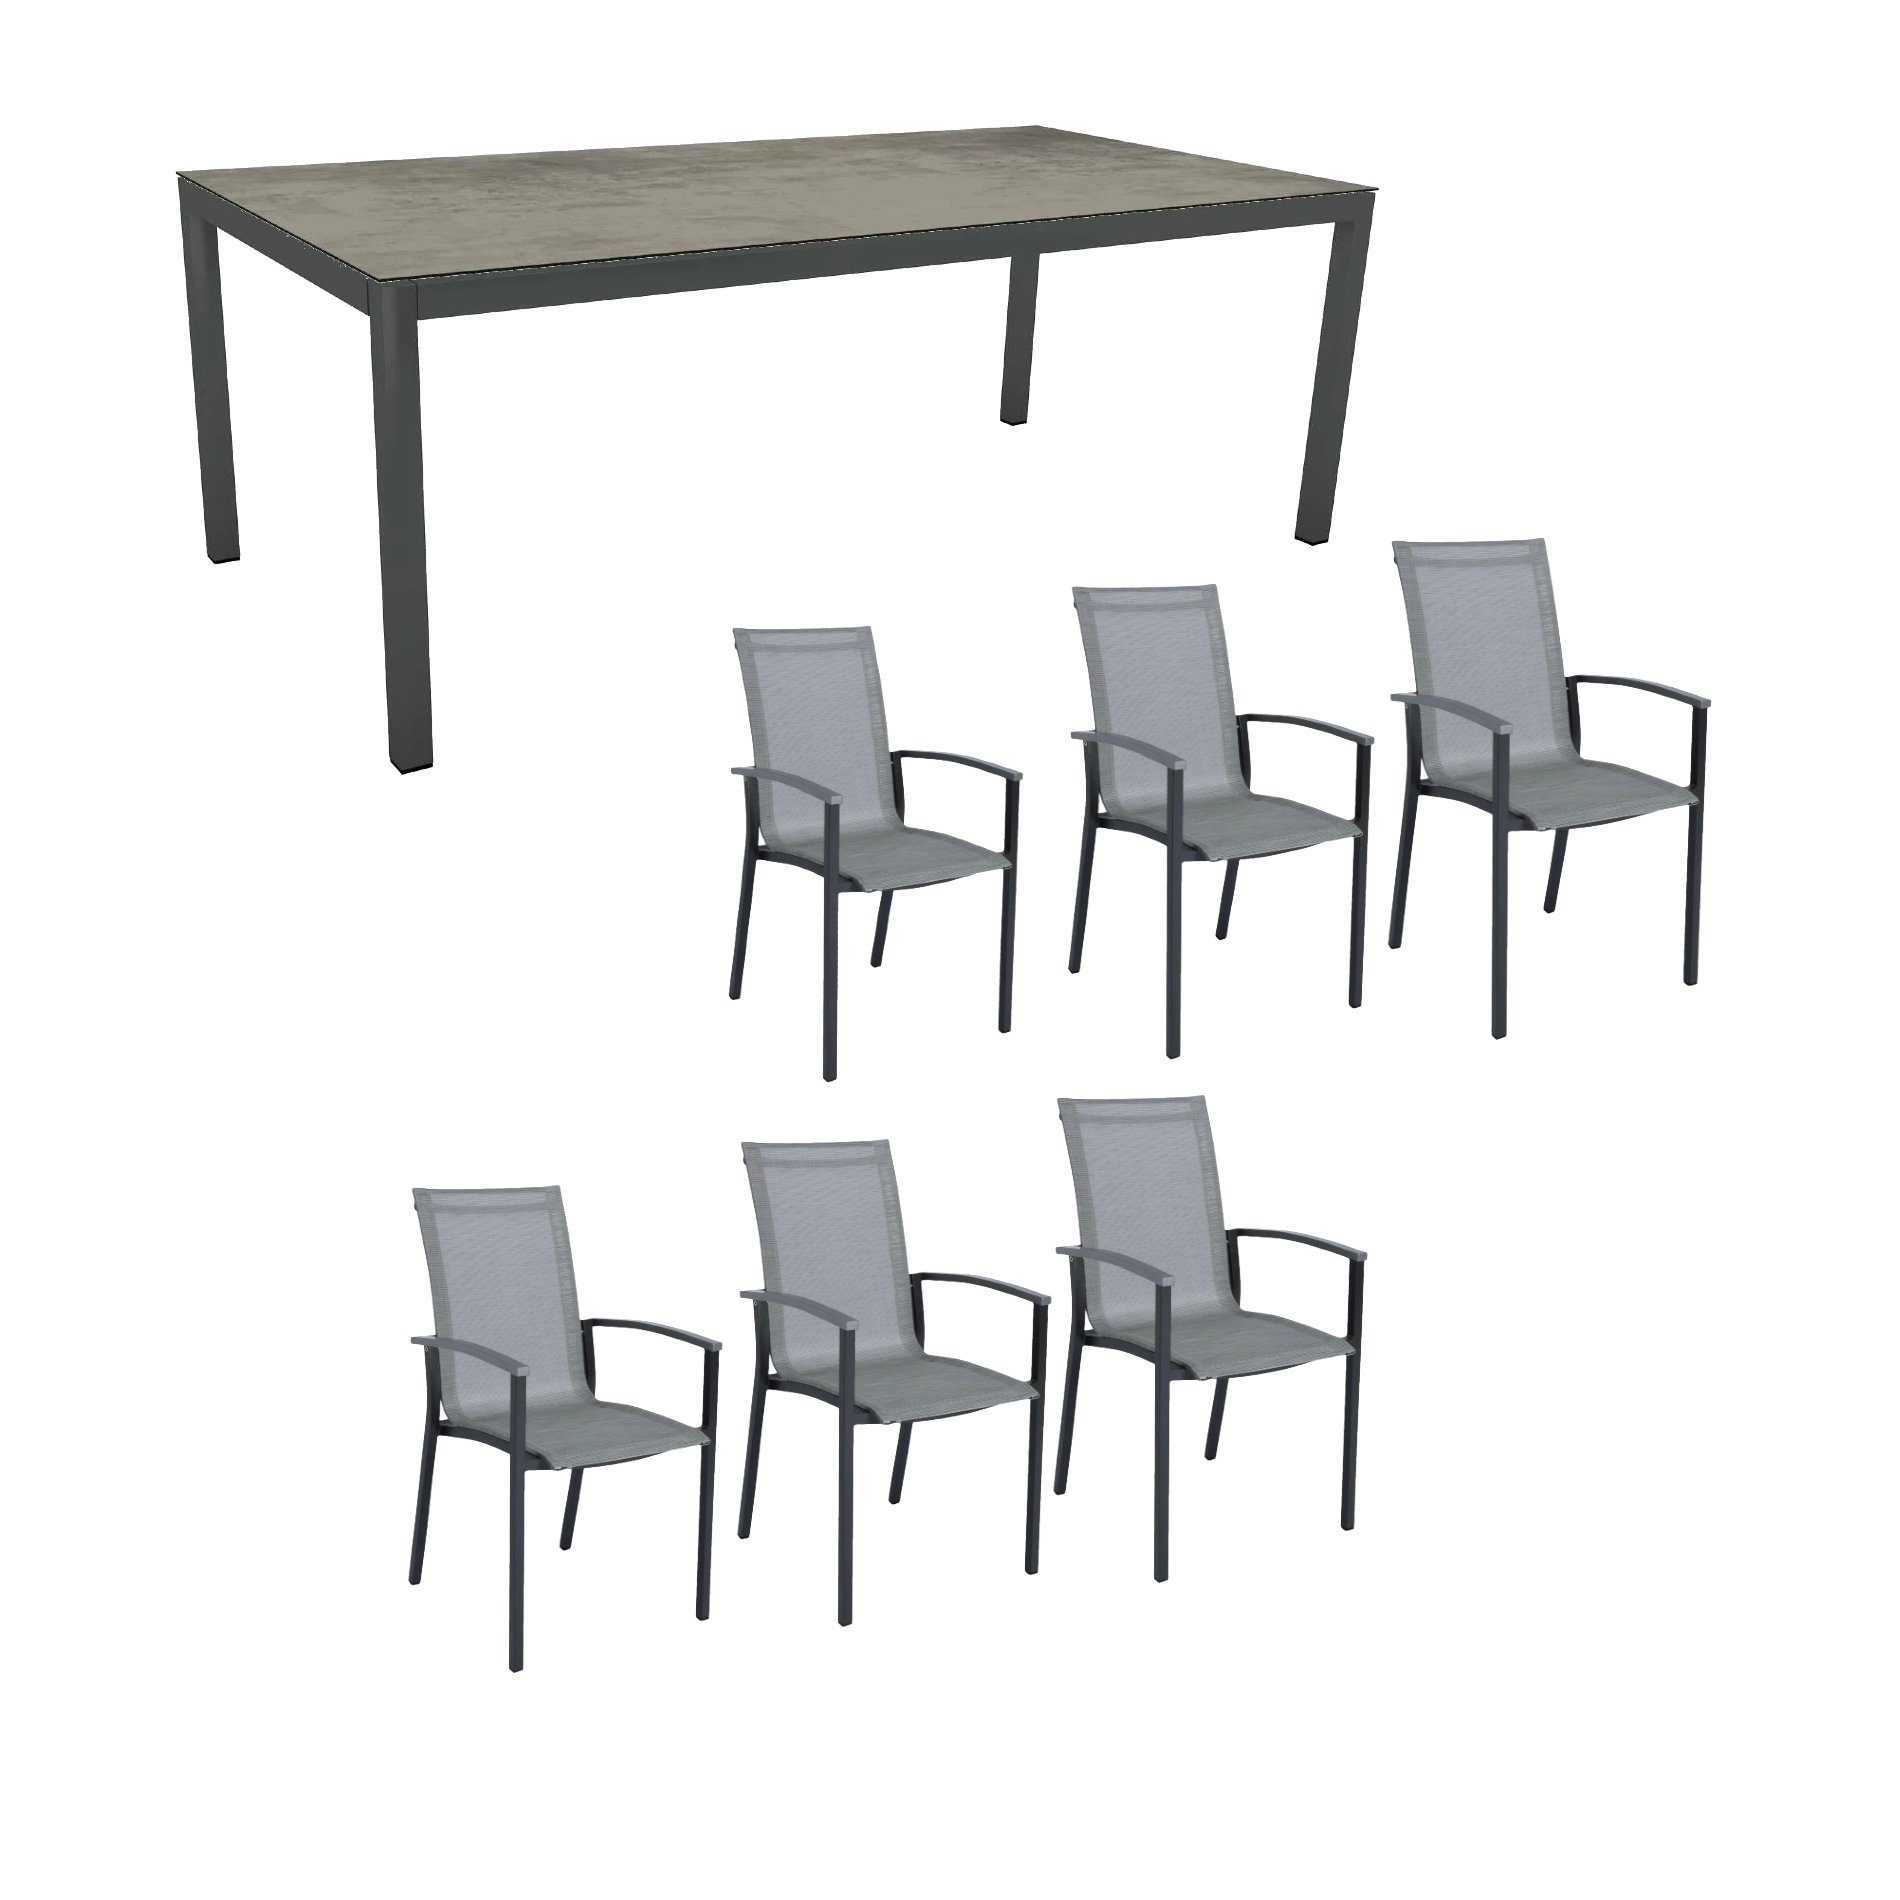 Stern Gartenmöbel-Set "Evoee", Gestelle Aluminium anthrazit, Tischplatte HPL Zement 200x100cm, Sitz- und Rückenfläche Textilgewebe silber, Armlehnen graphit